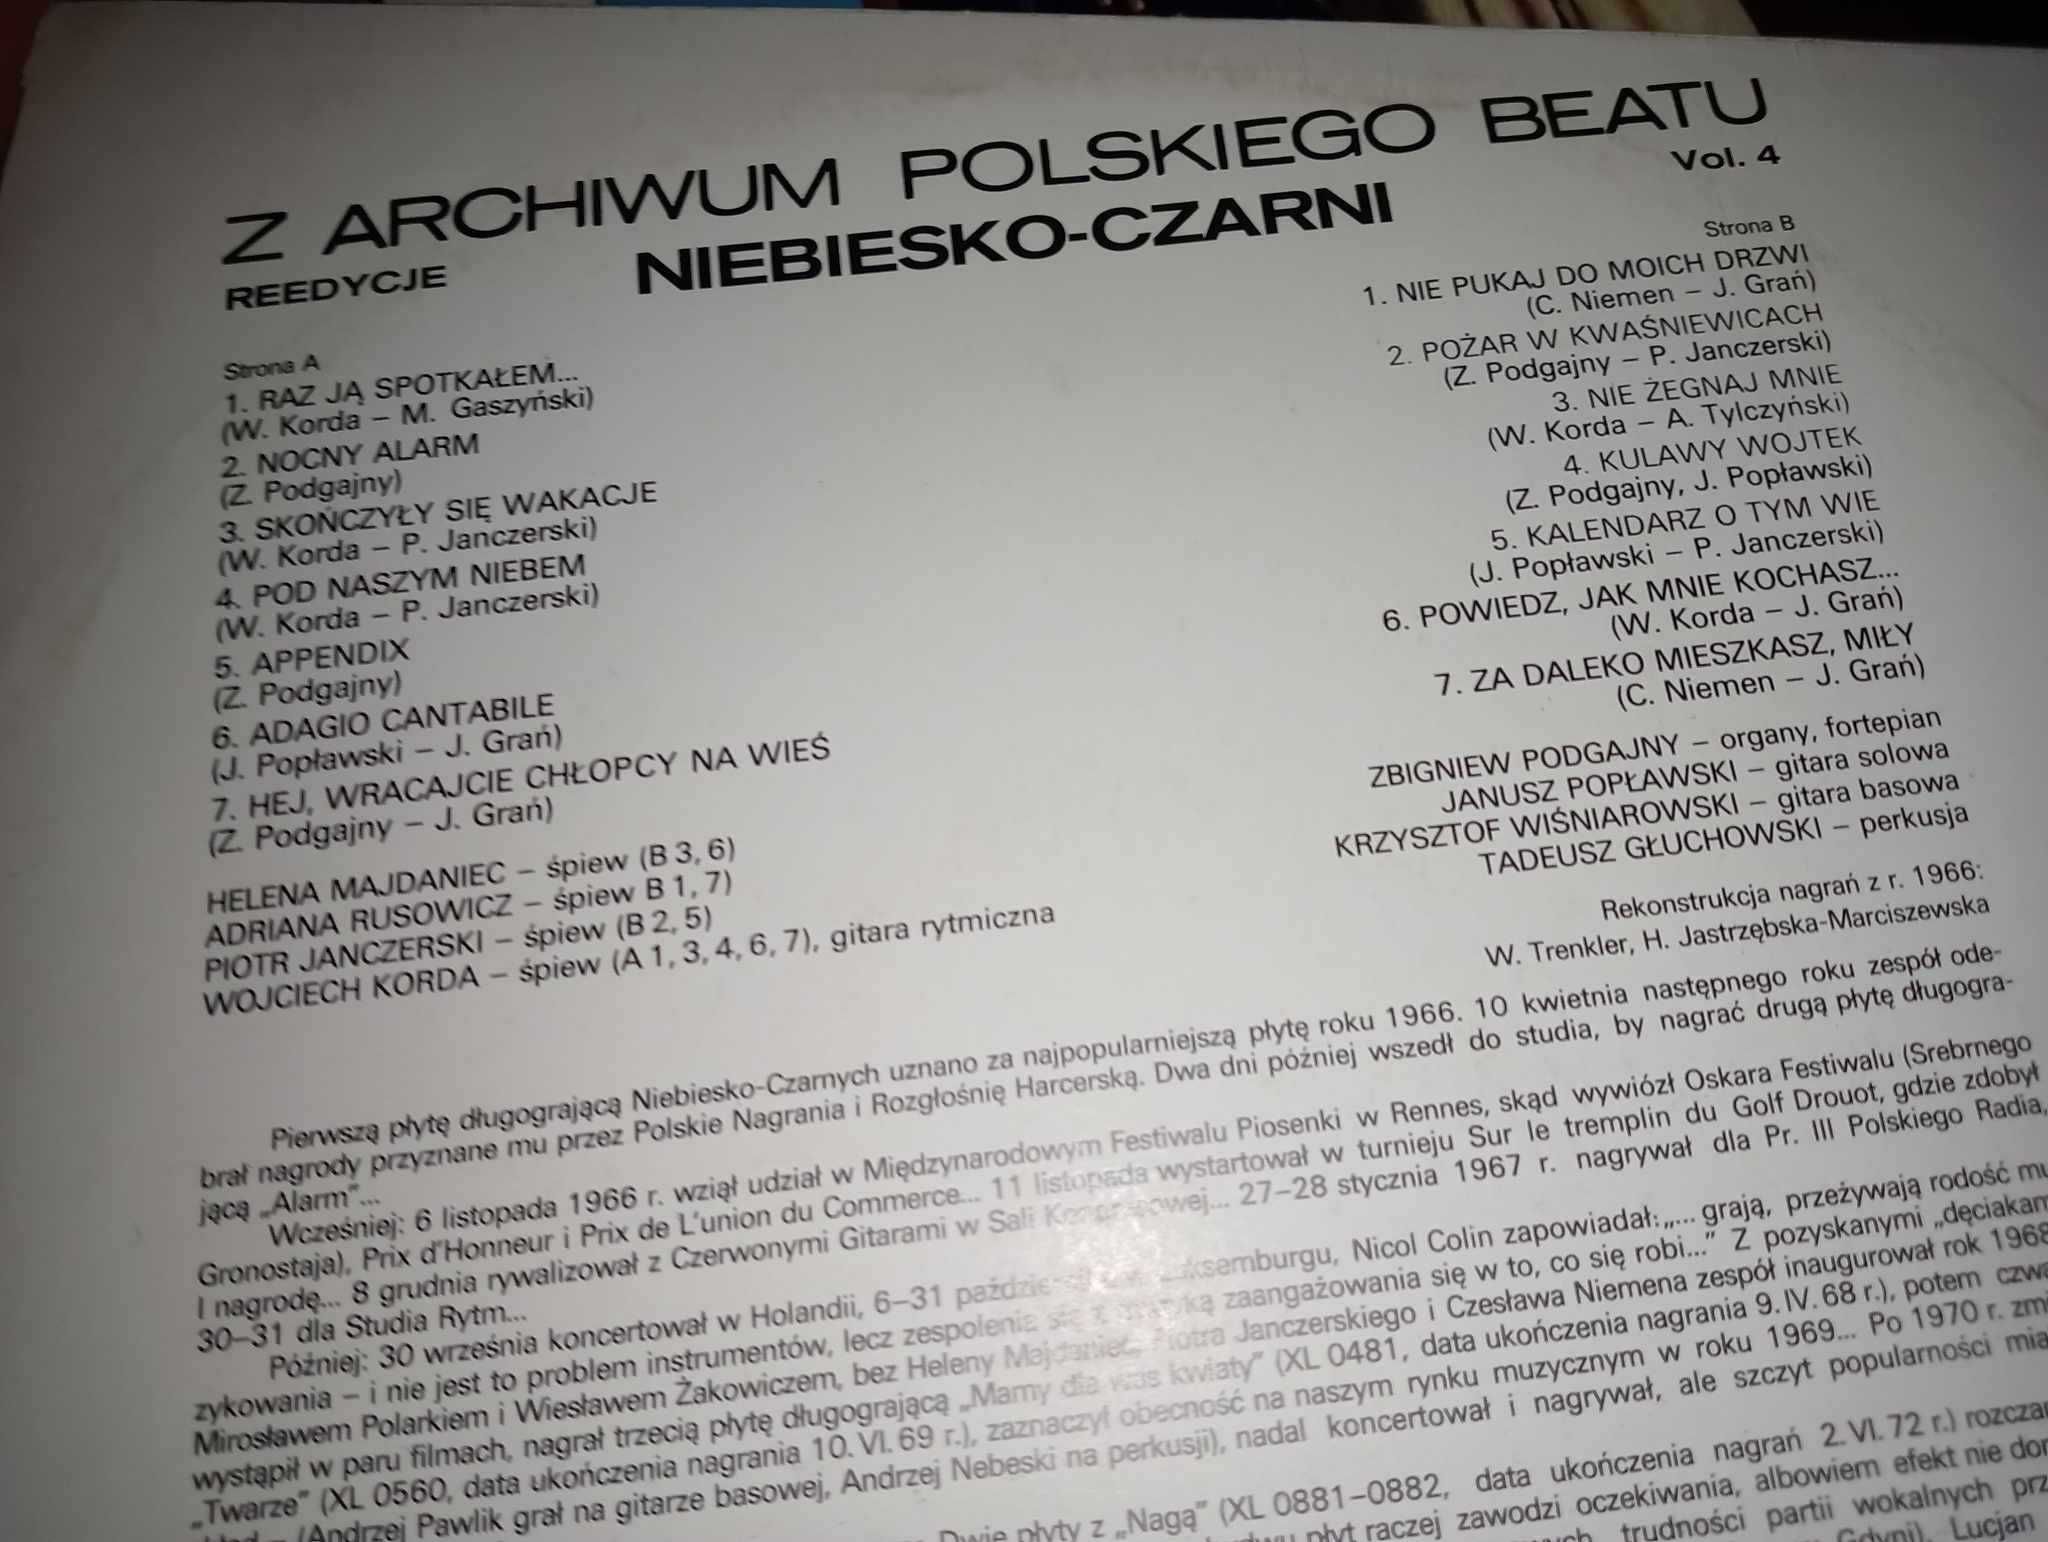 Dwa winyle "Z archiwum Polskiego beatu vol.3 i 4" Niebiesko-Czarni